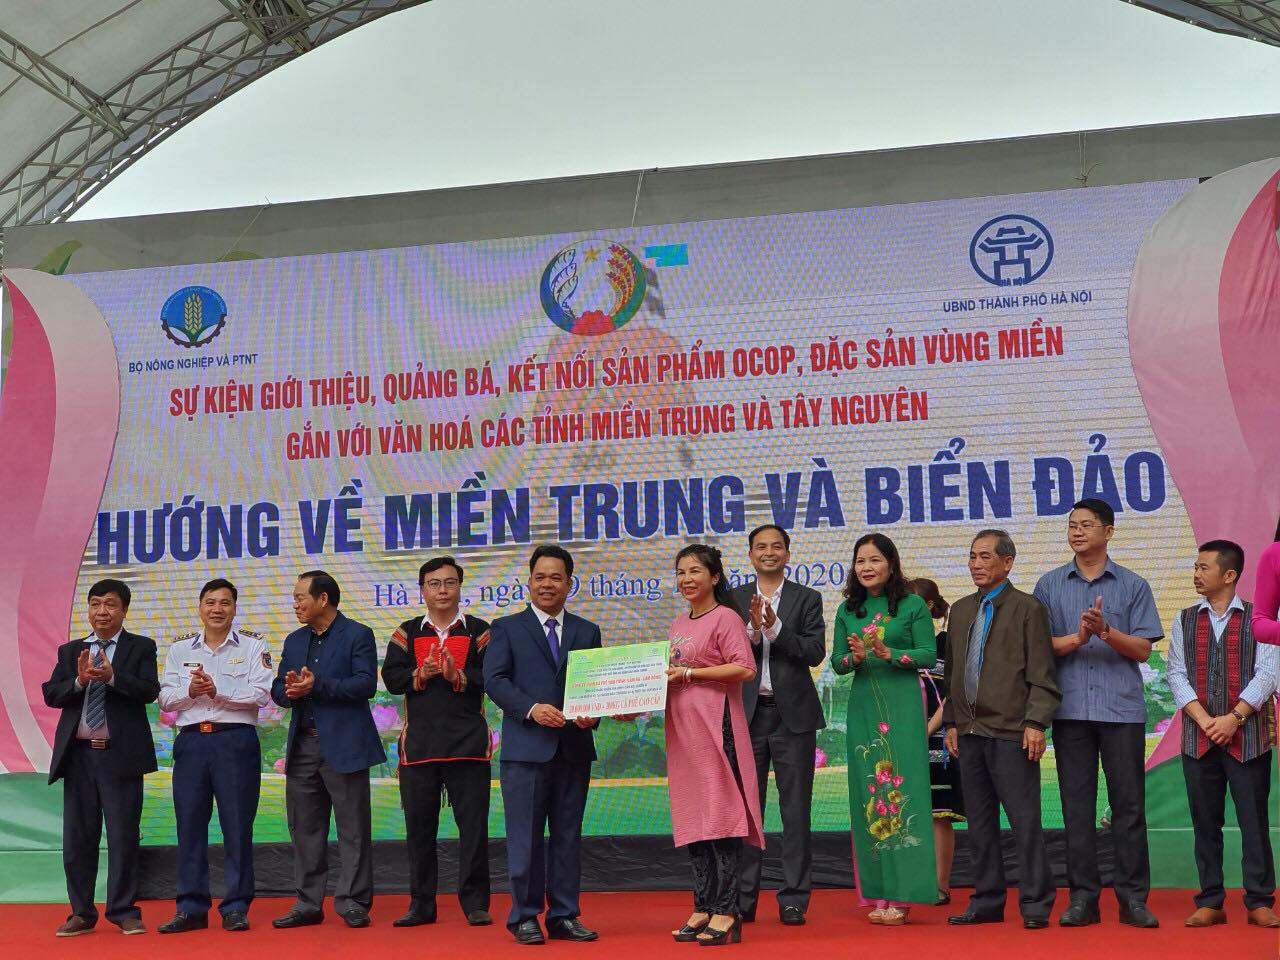 Khai mạc sự kiện quảng bá sản phẩm OCOP gắn với văn hóa các tỉnh miền Trung và Tây Nguyên